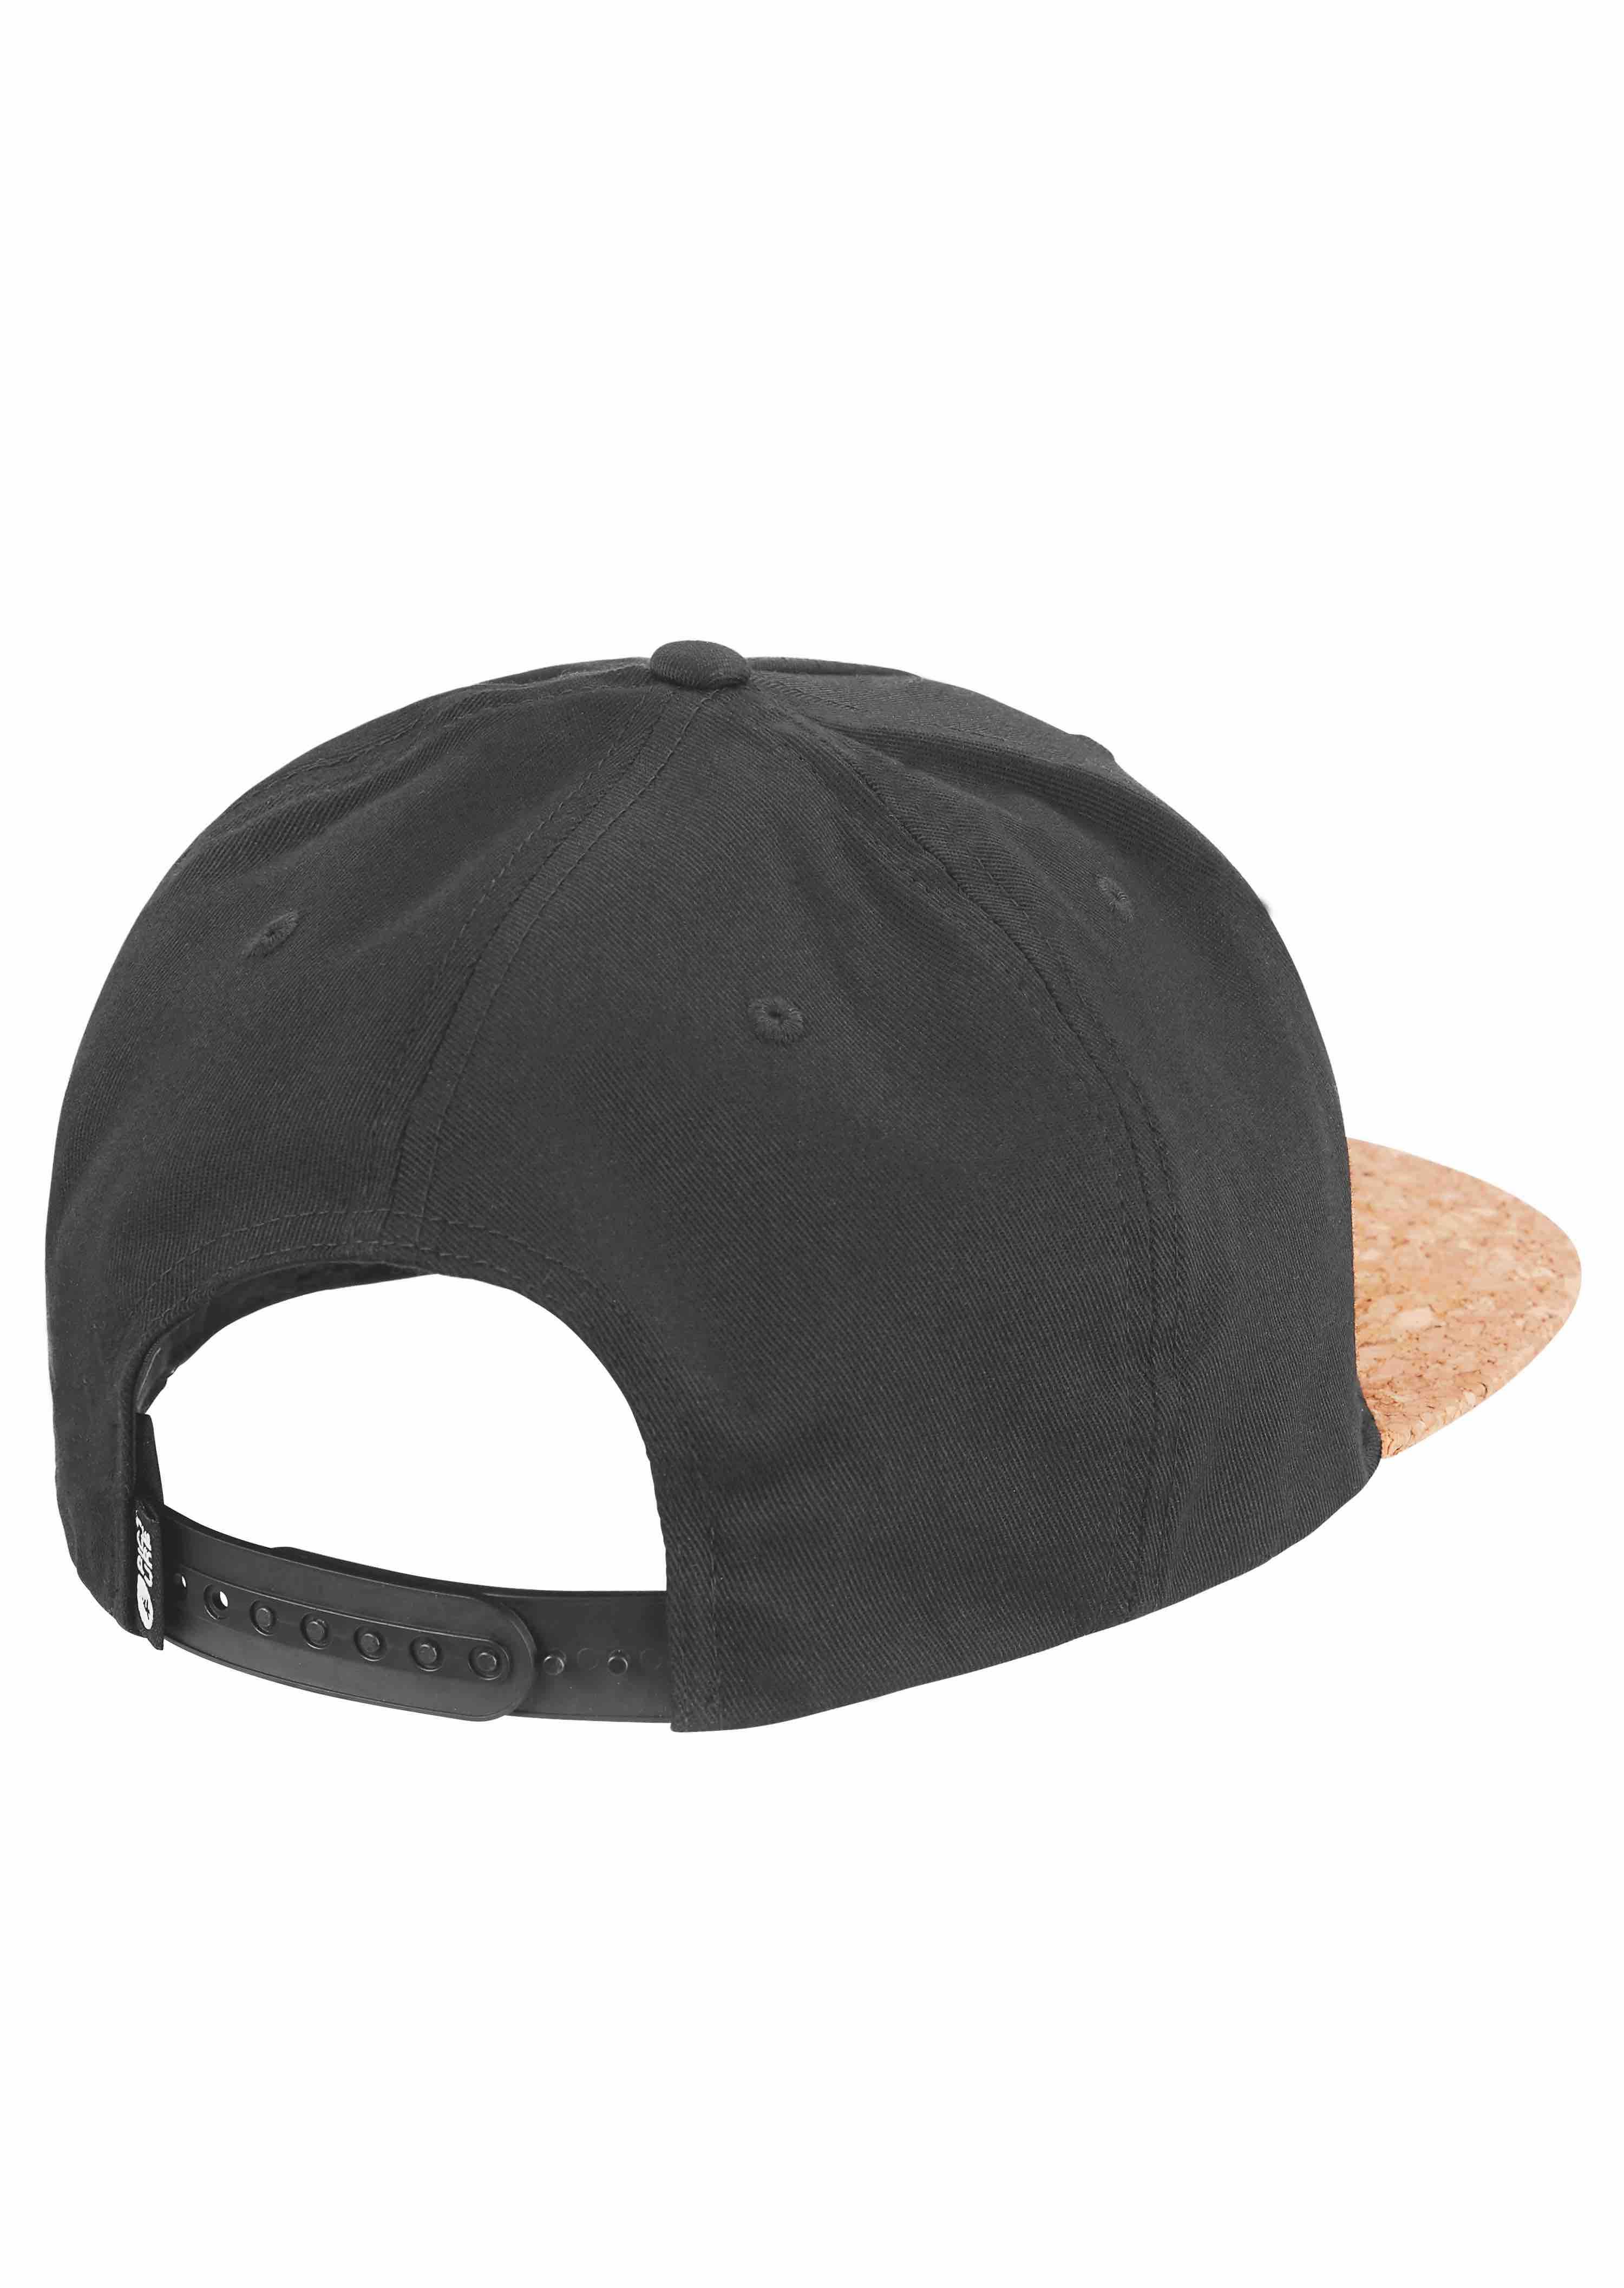 Casquette Narrow Cap - Black 